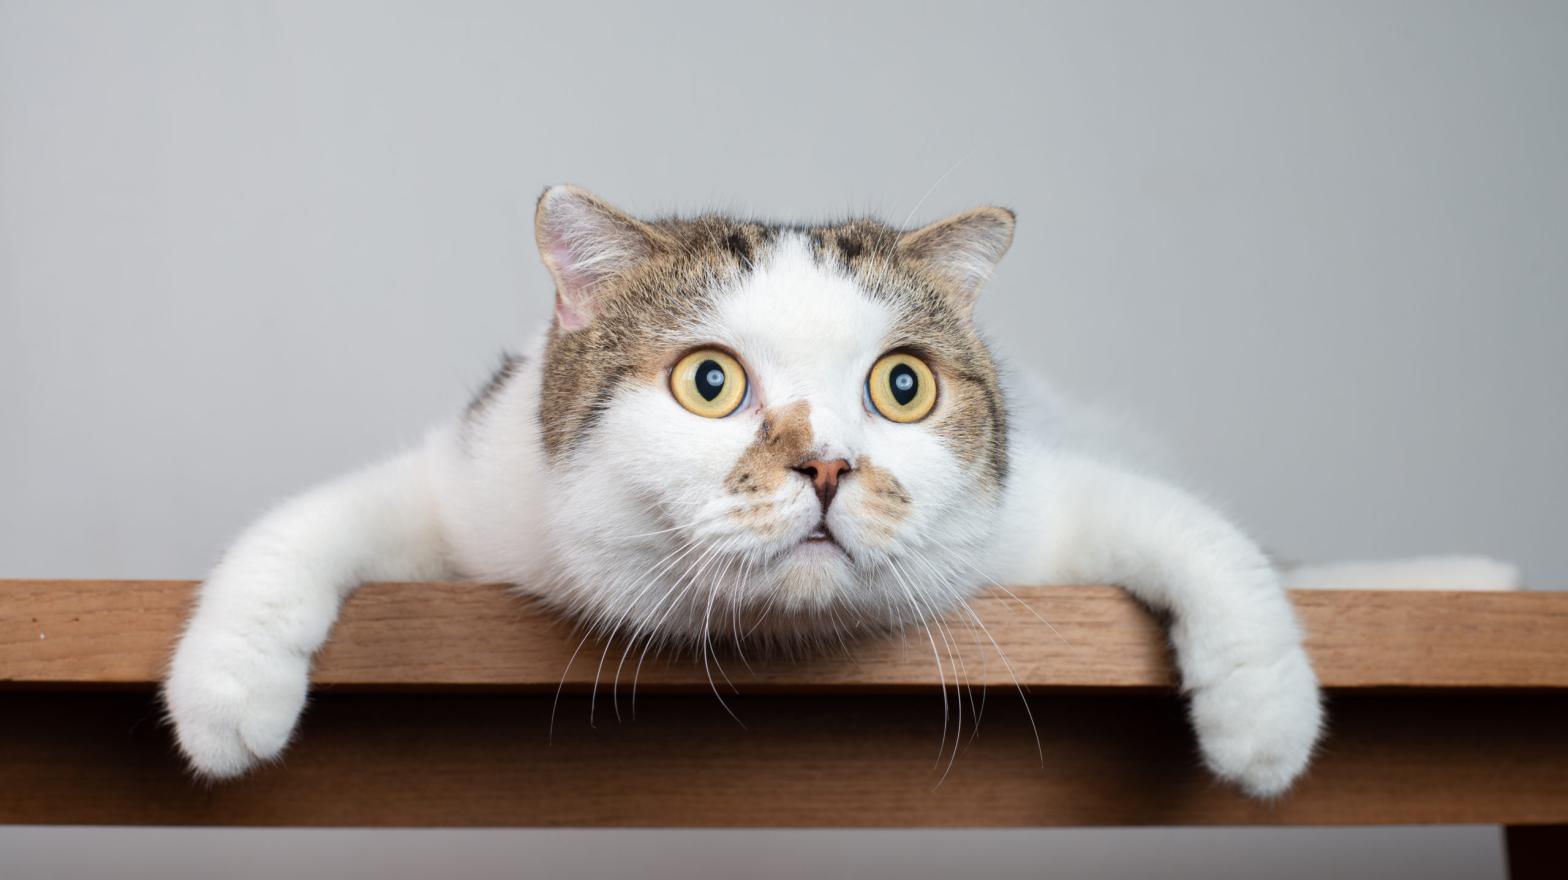 Photo: Cat Box, Shutterstock